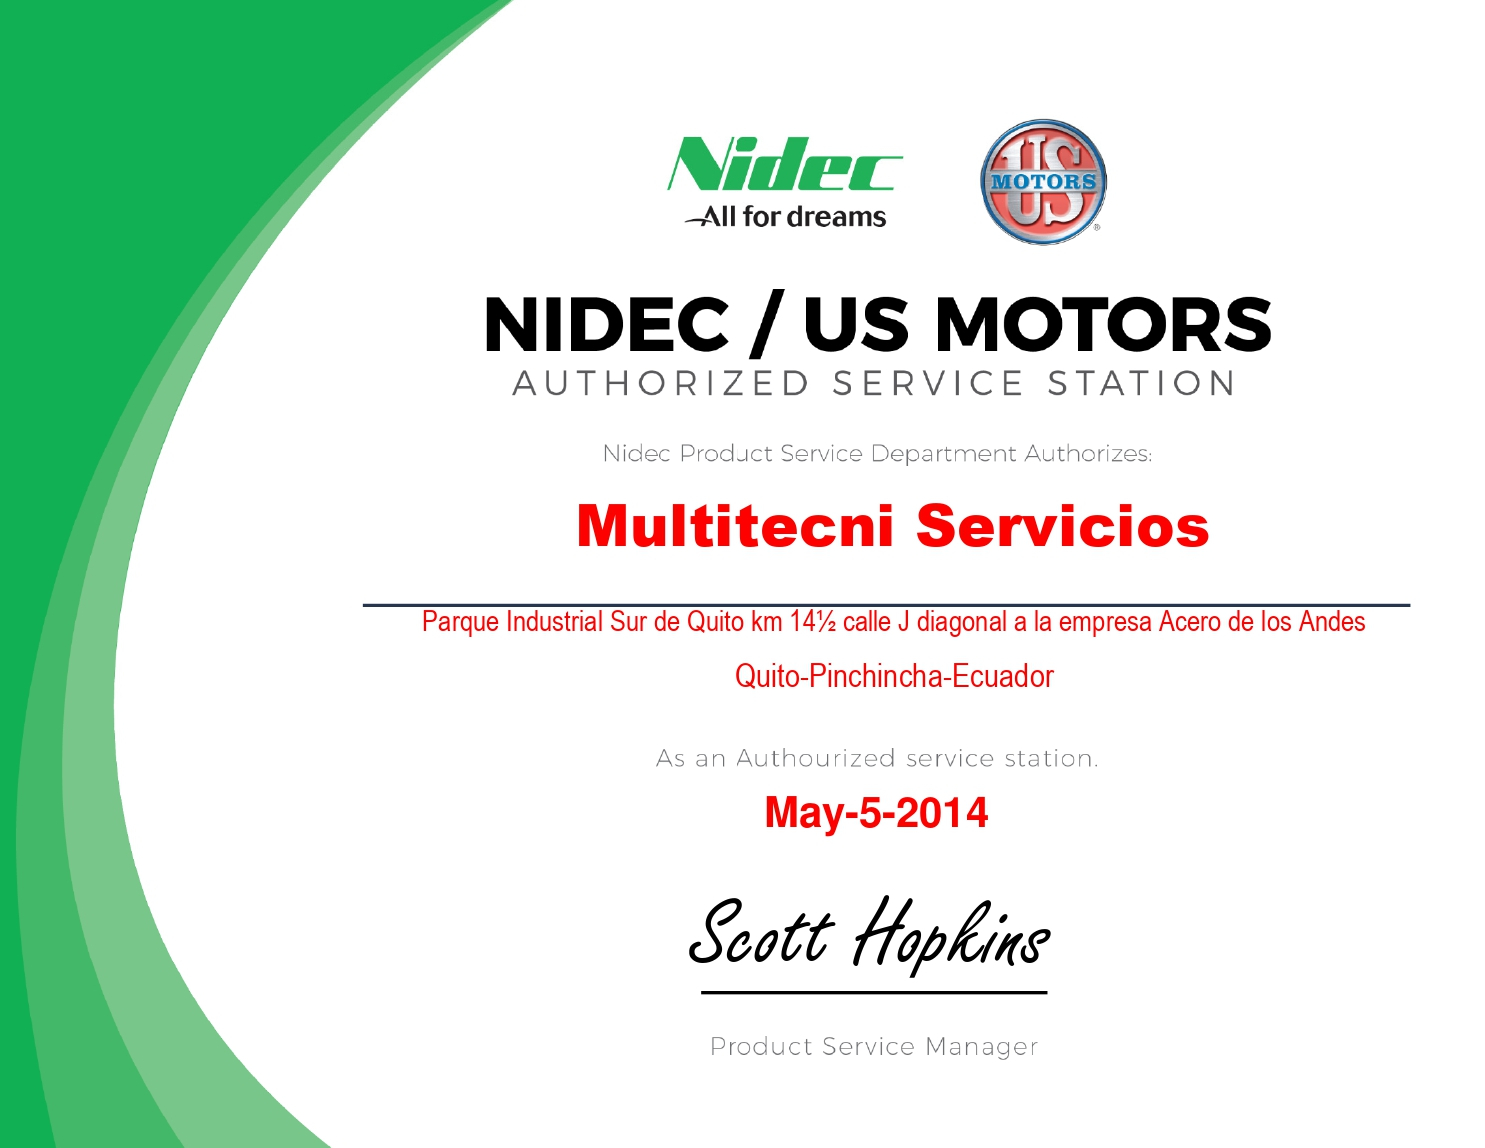 Certificación de Taller Autorizado NIDEC / US MOTORS